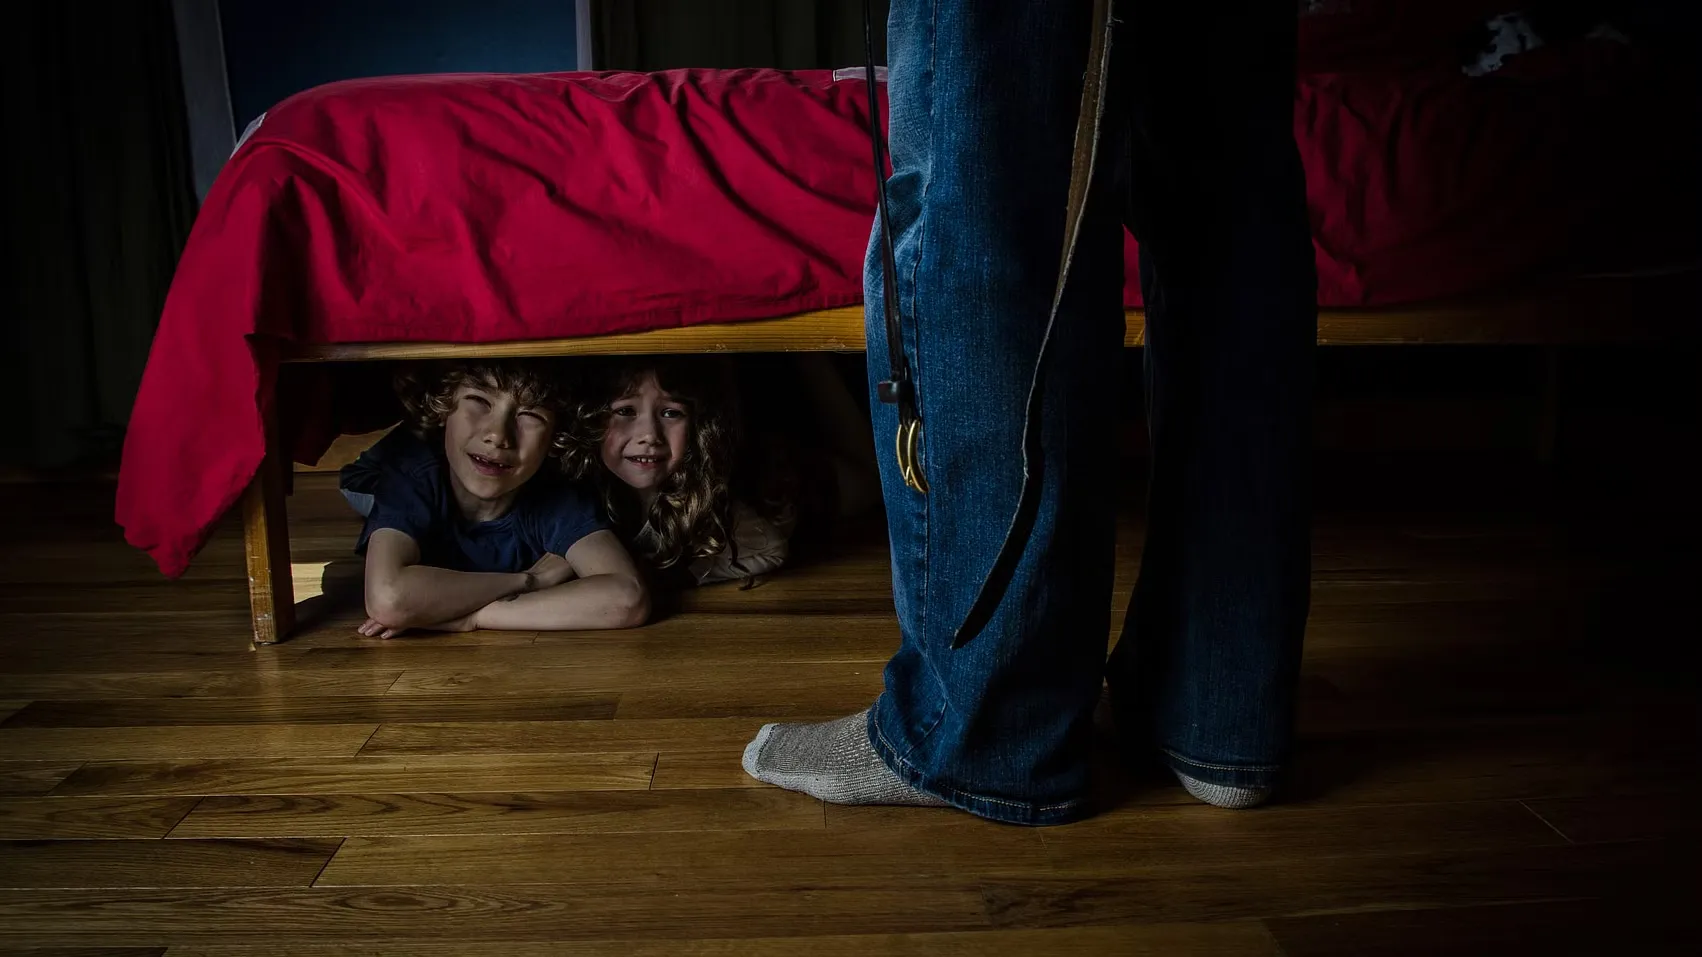 Hid under the bed. Мальчик под кроватью. Спрятался под кровать. Ребенок прячется под кроватью.